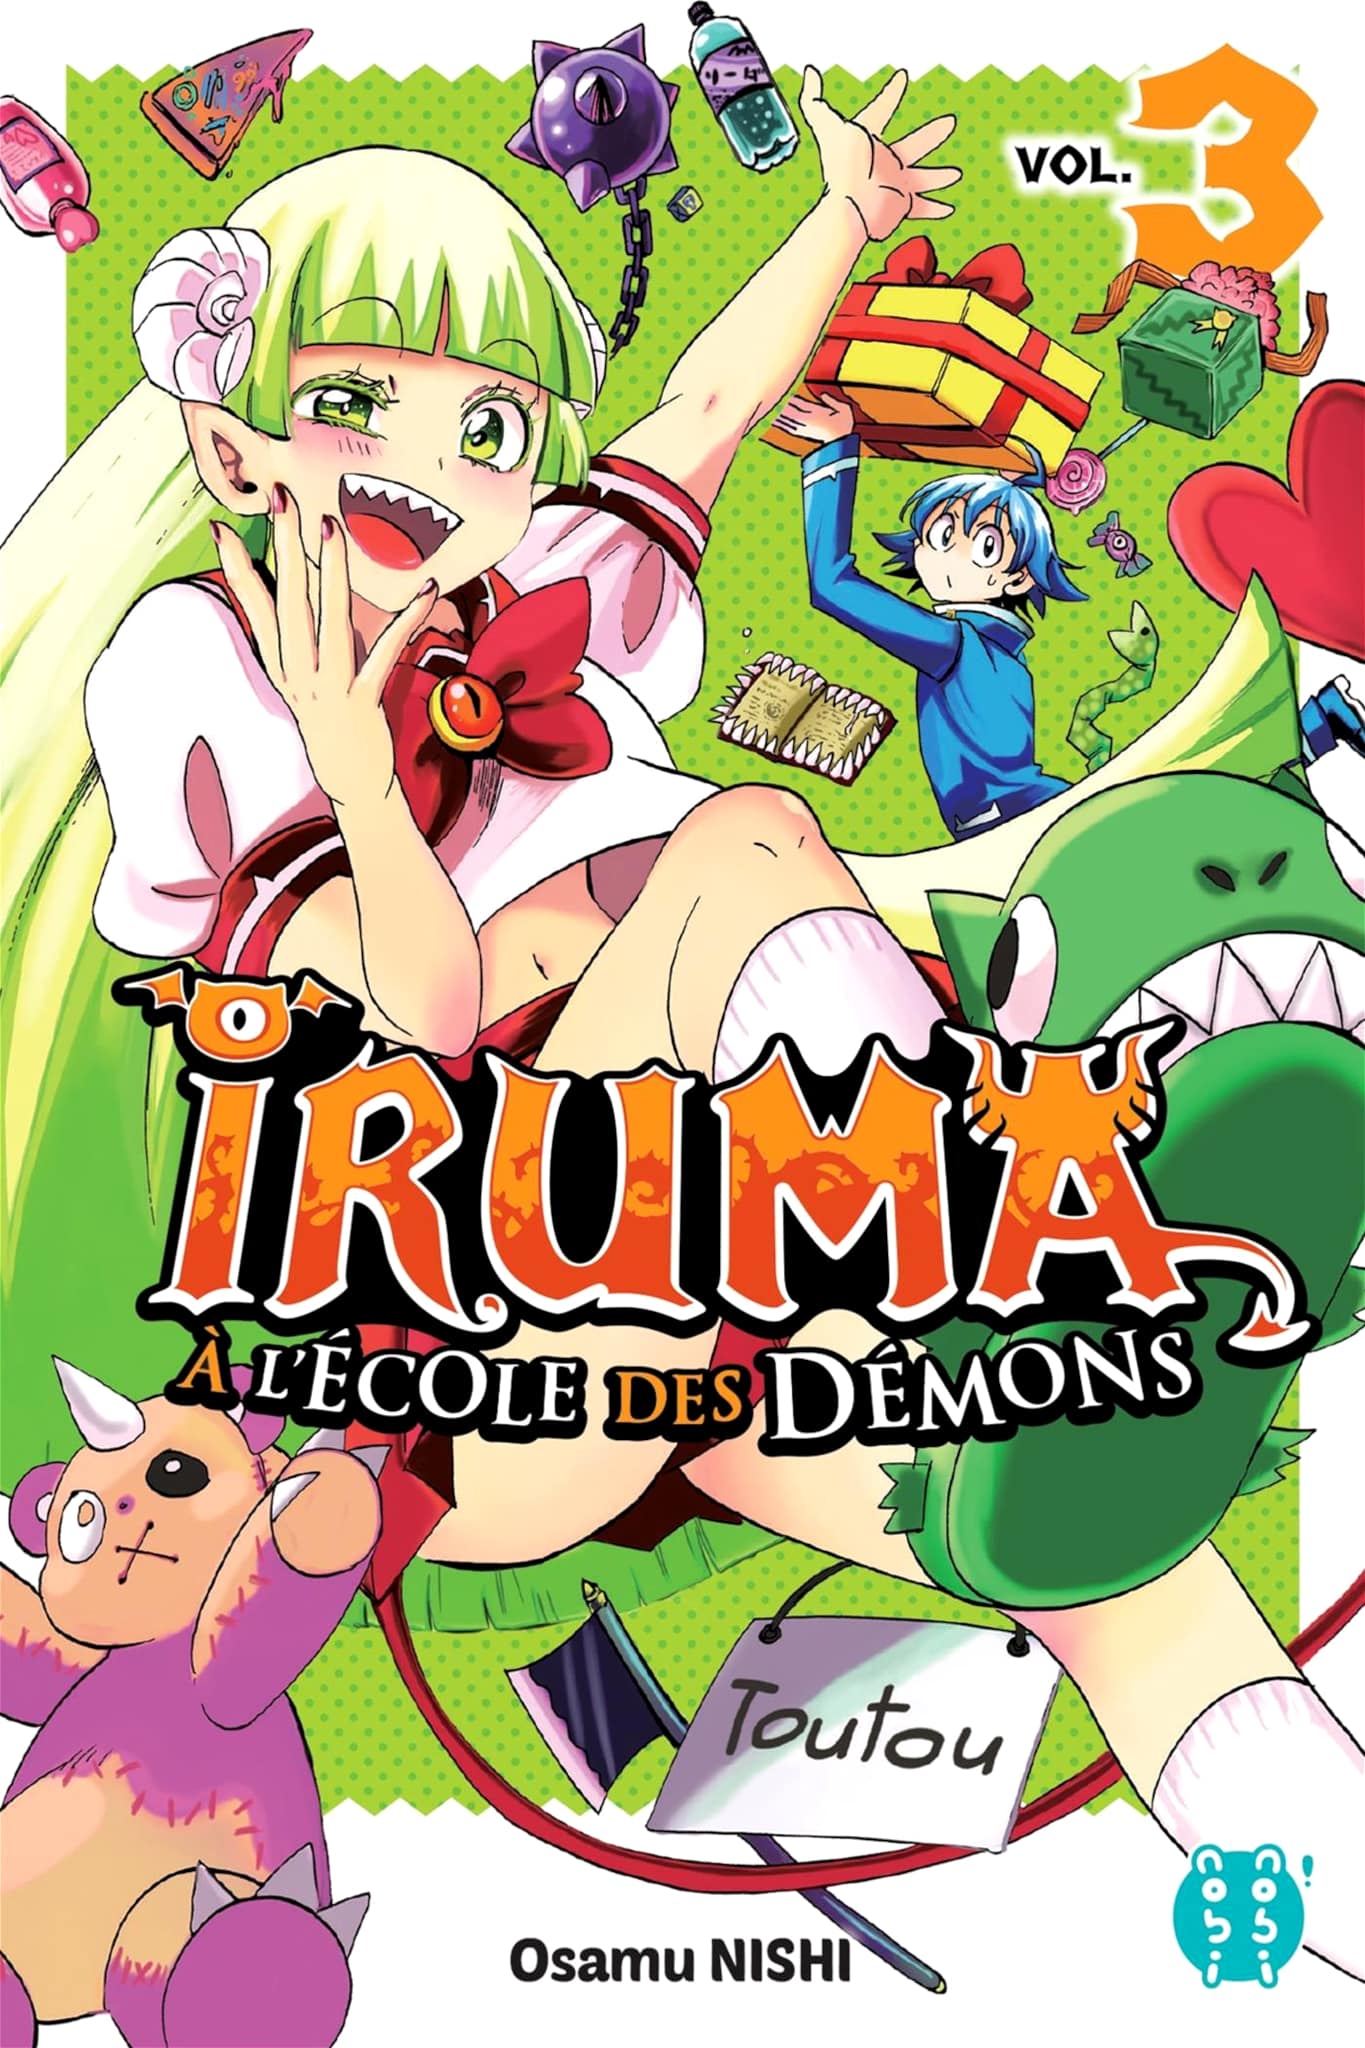 Tome 3 du manga Iruma à lécole des démons